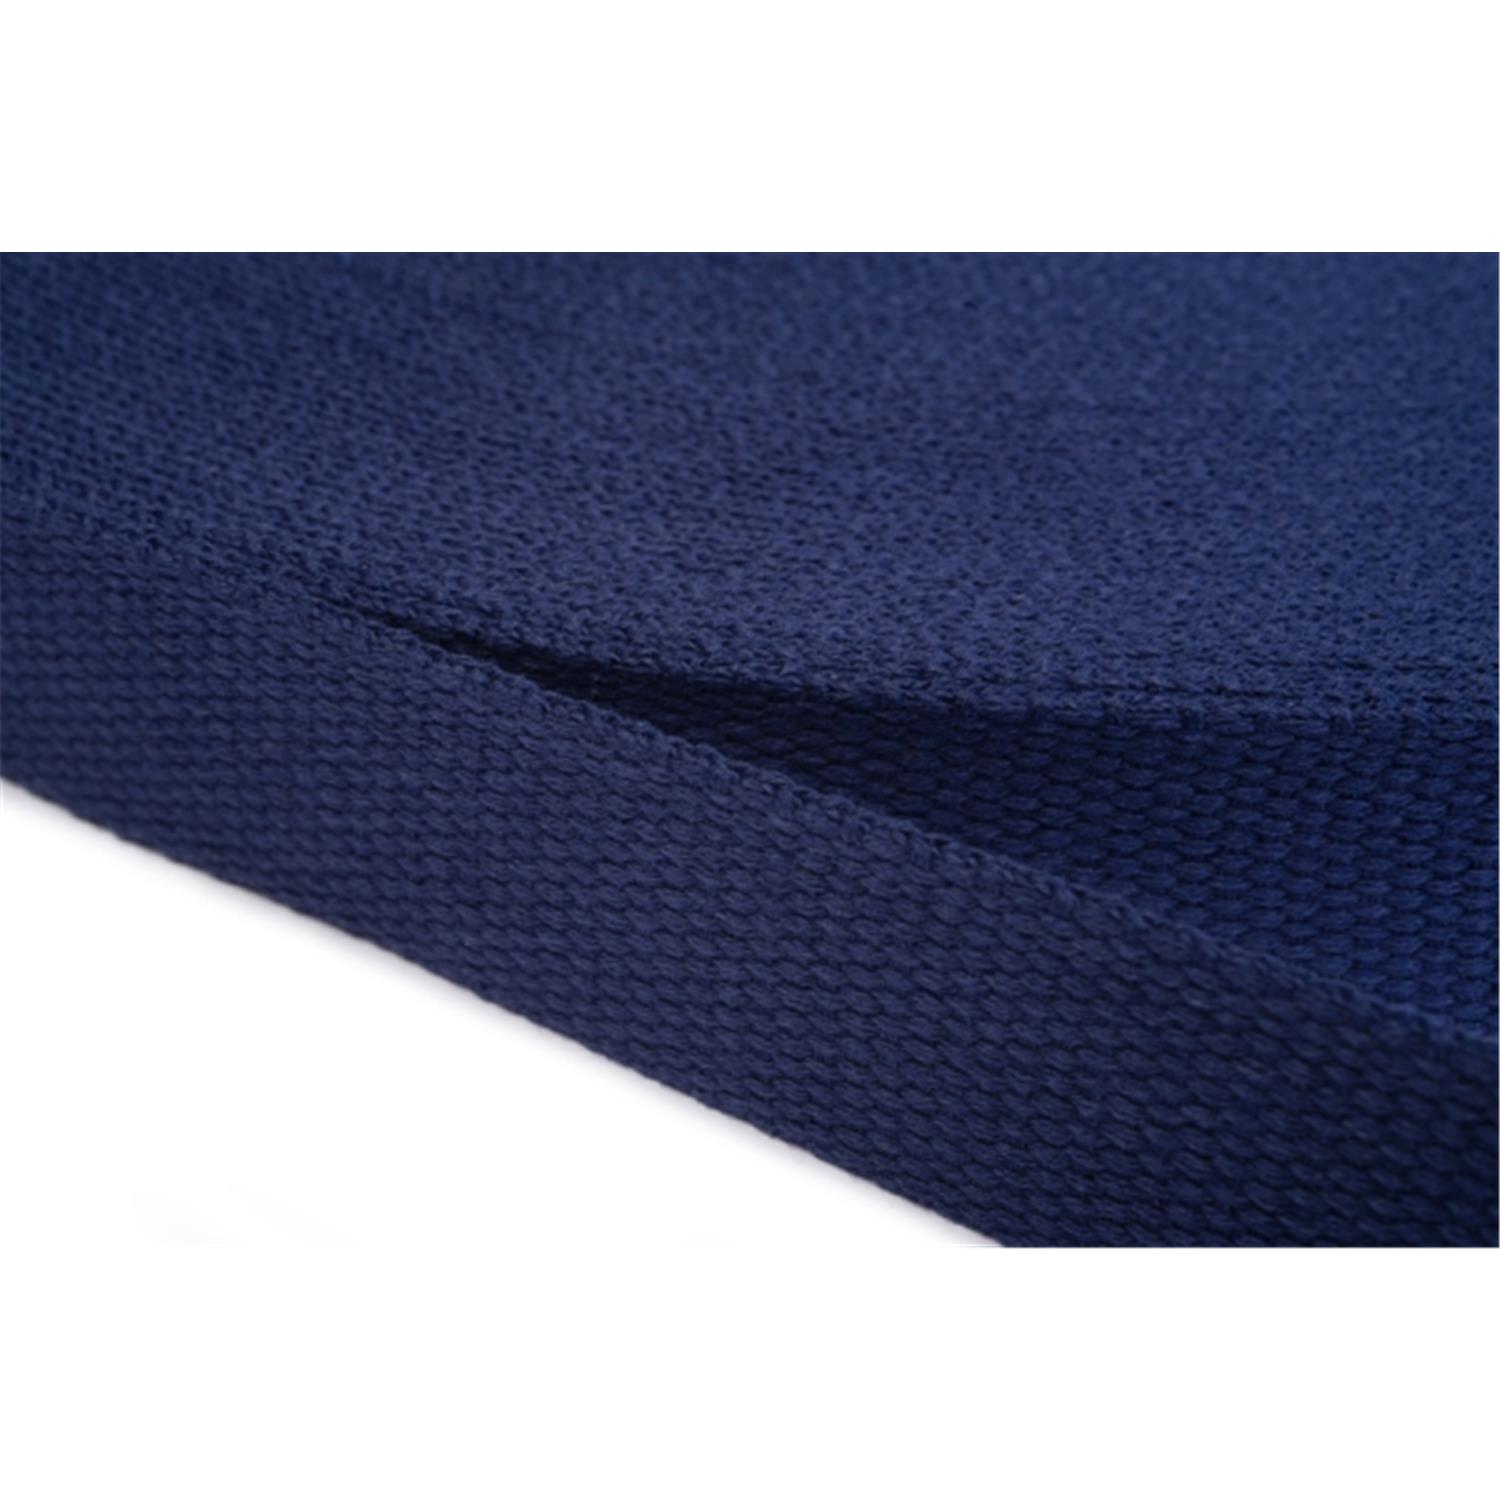 Gurtband aus Baumwolle 10mm in 20 Farben 13 - dunkelblau 6 Meter